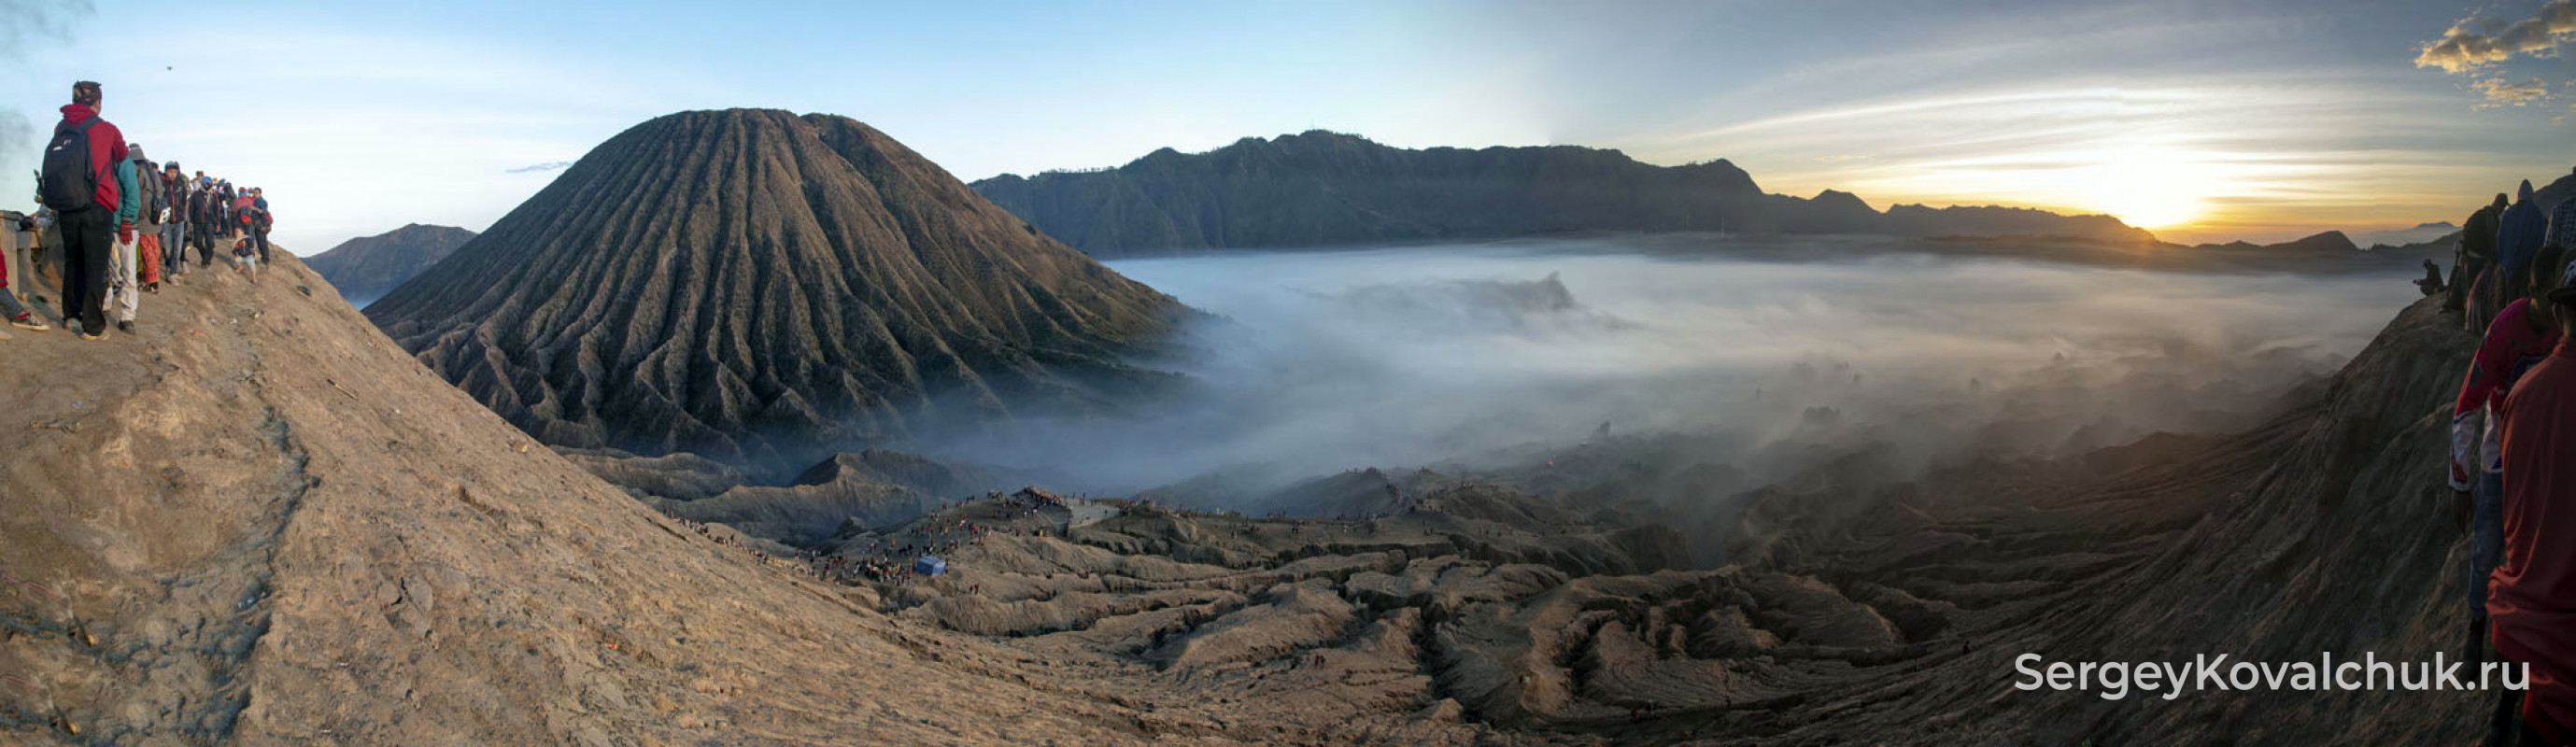 Вулкан Бромо, Ява,  Индонезия